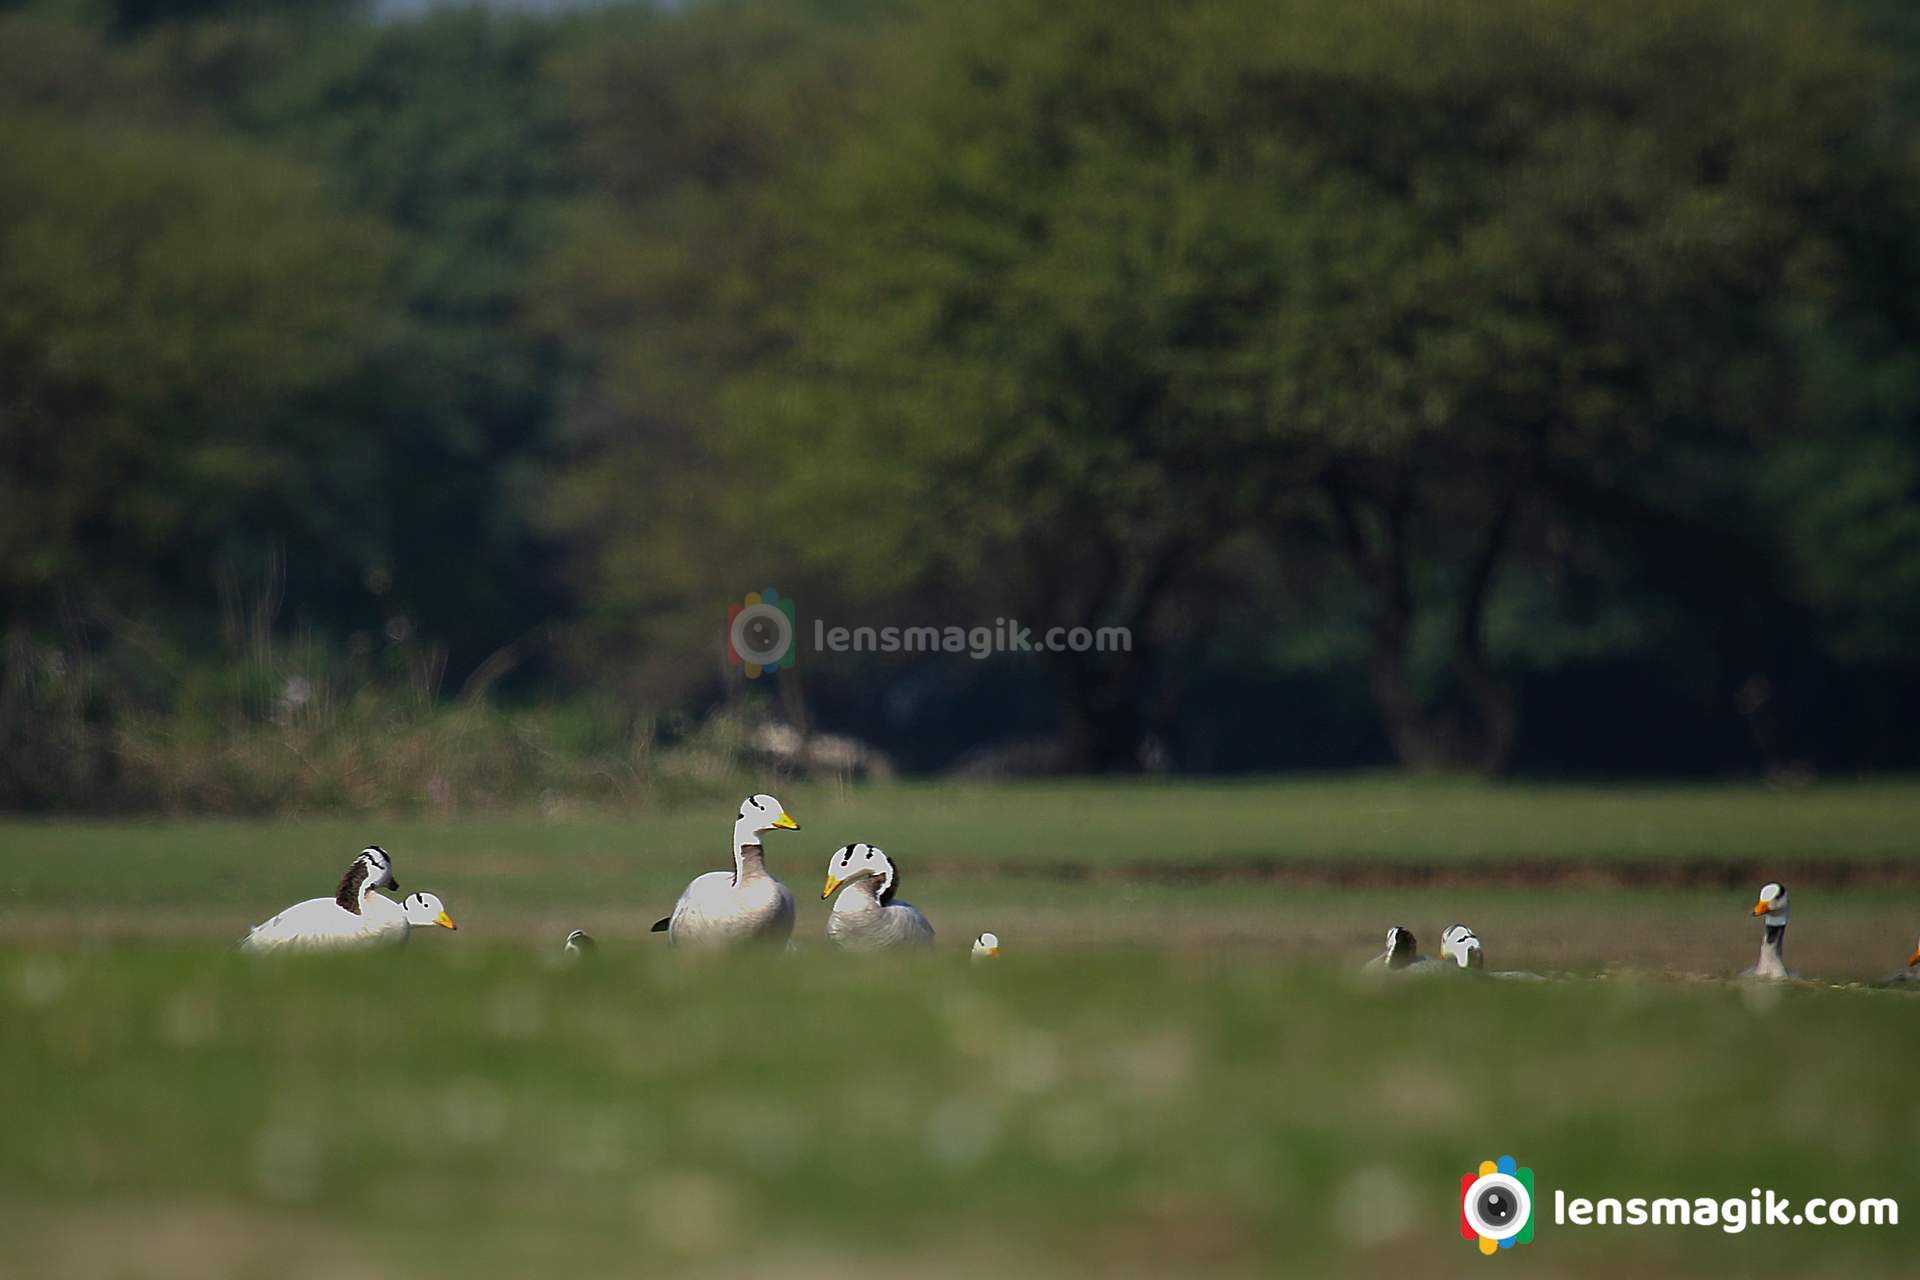 Birds of Gujarat